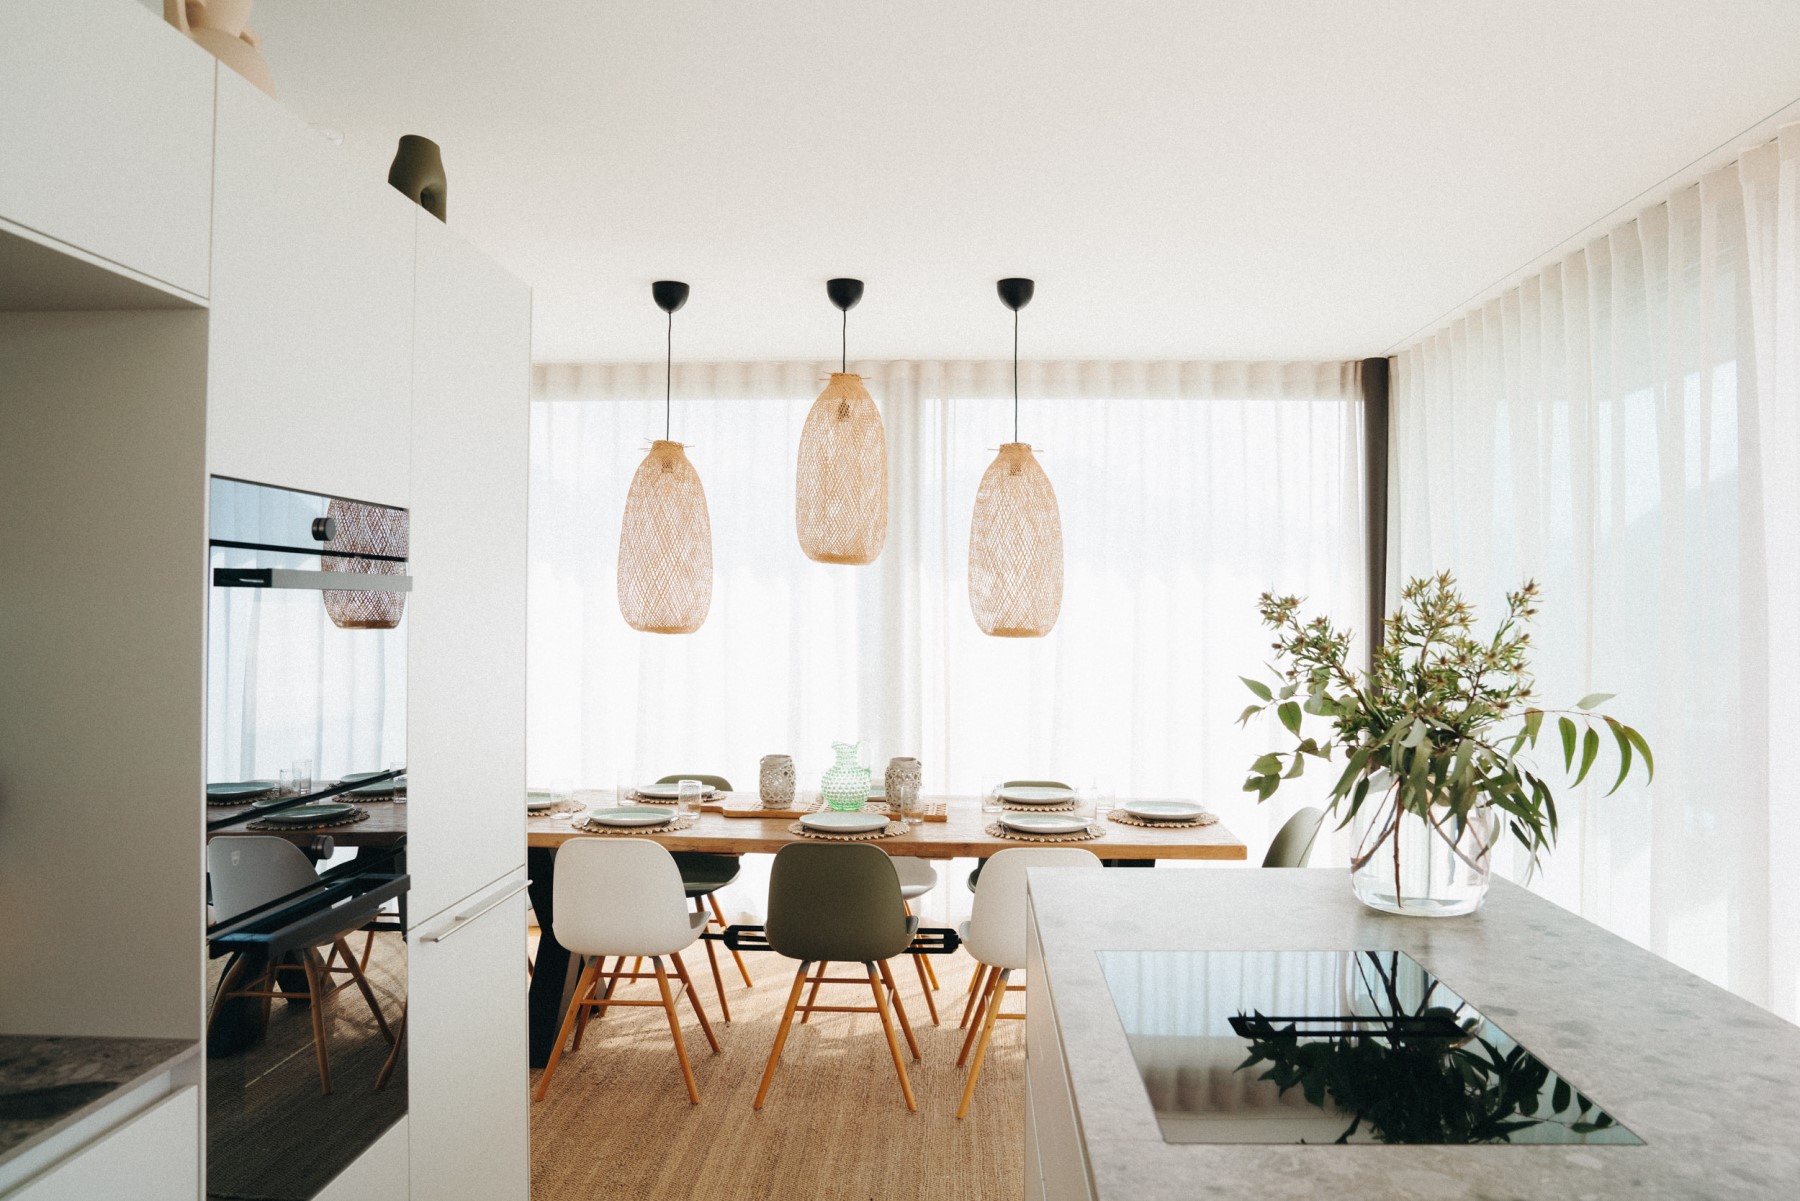 Blick aus Küche in Essbereich mit 3 Hängelampen, Esstisch und Stühlen